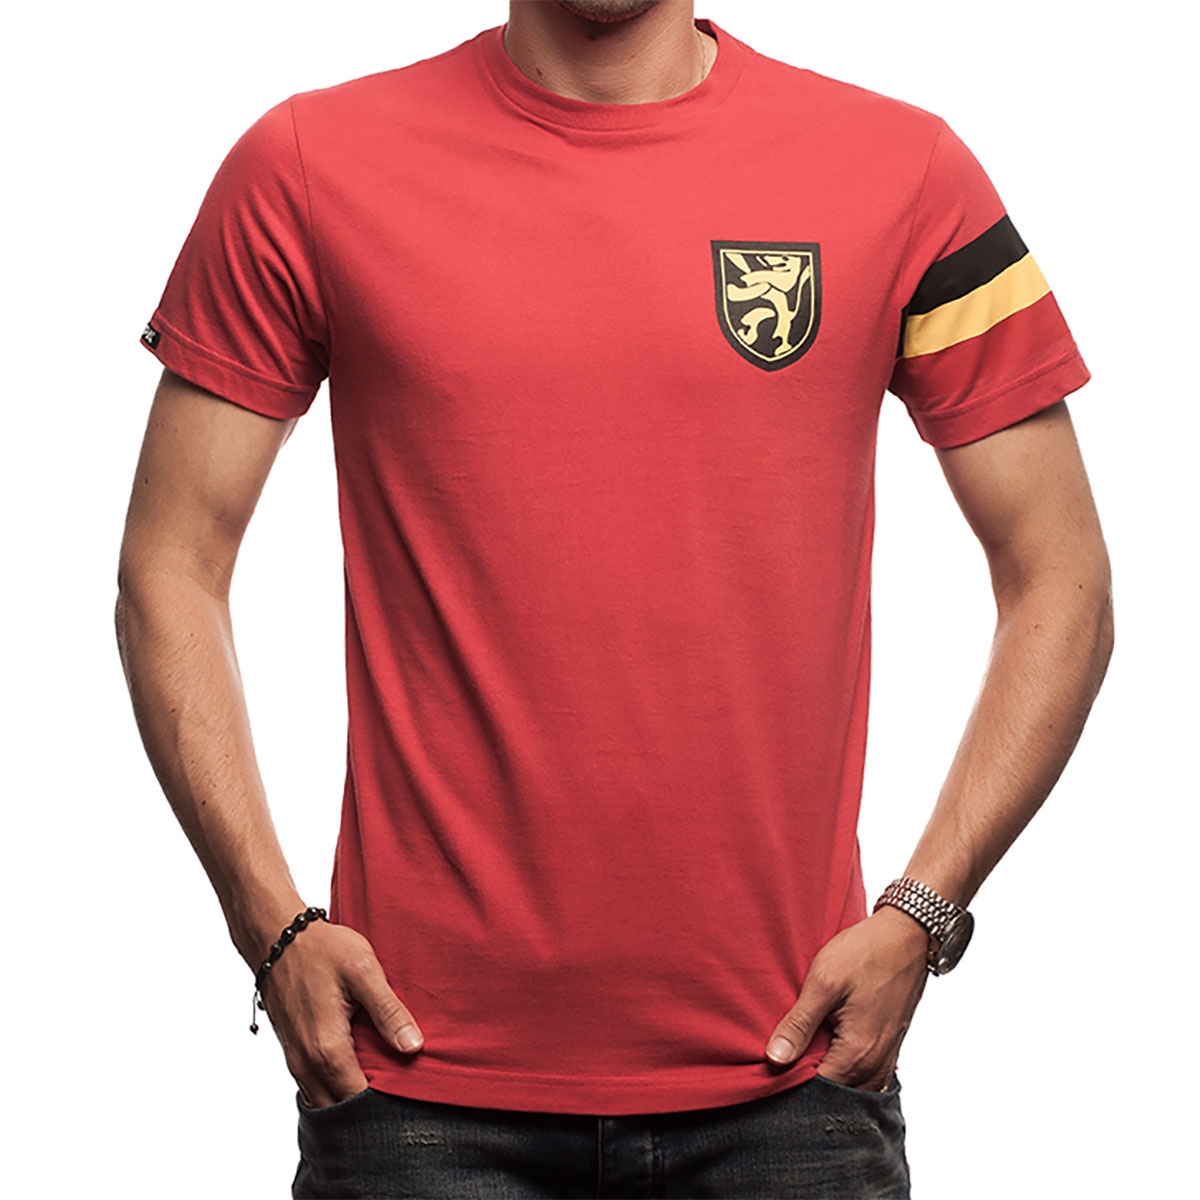 België retro Capitano - Voetbalshirts.com